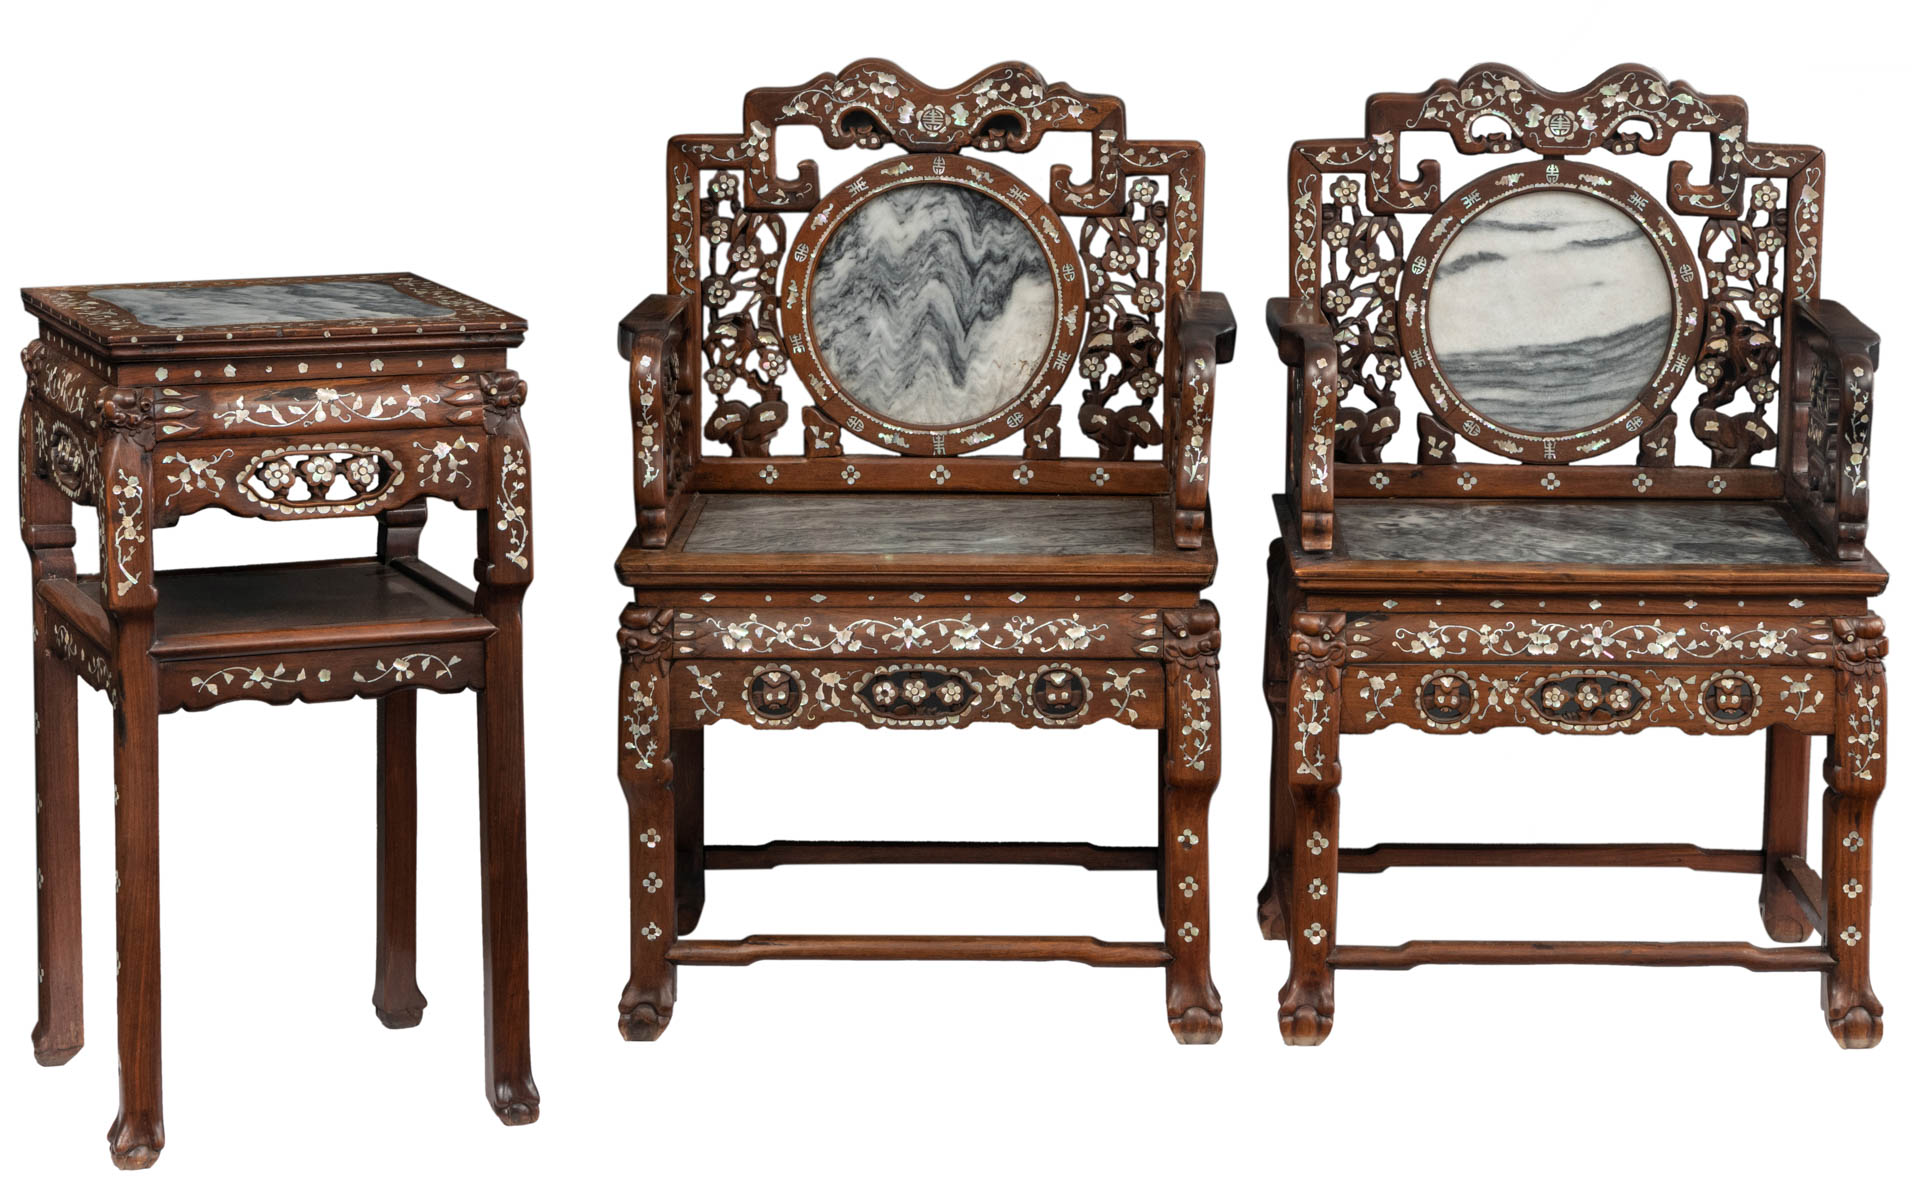 A Chinese exotic hardwood furniture set